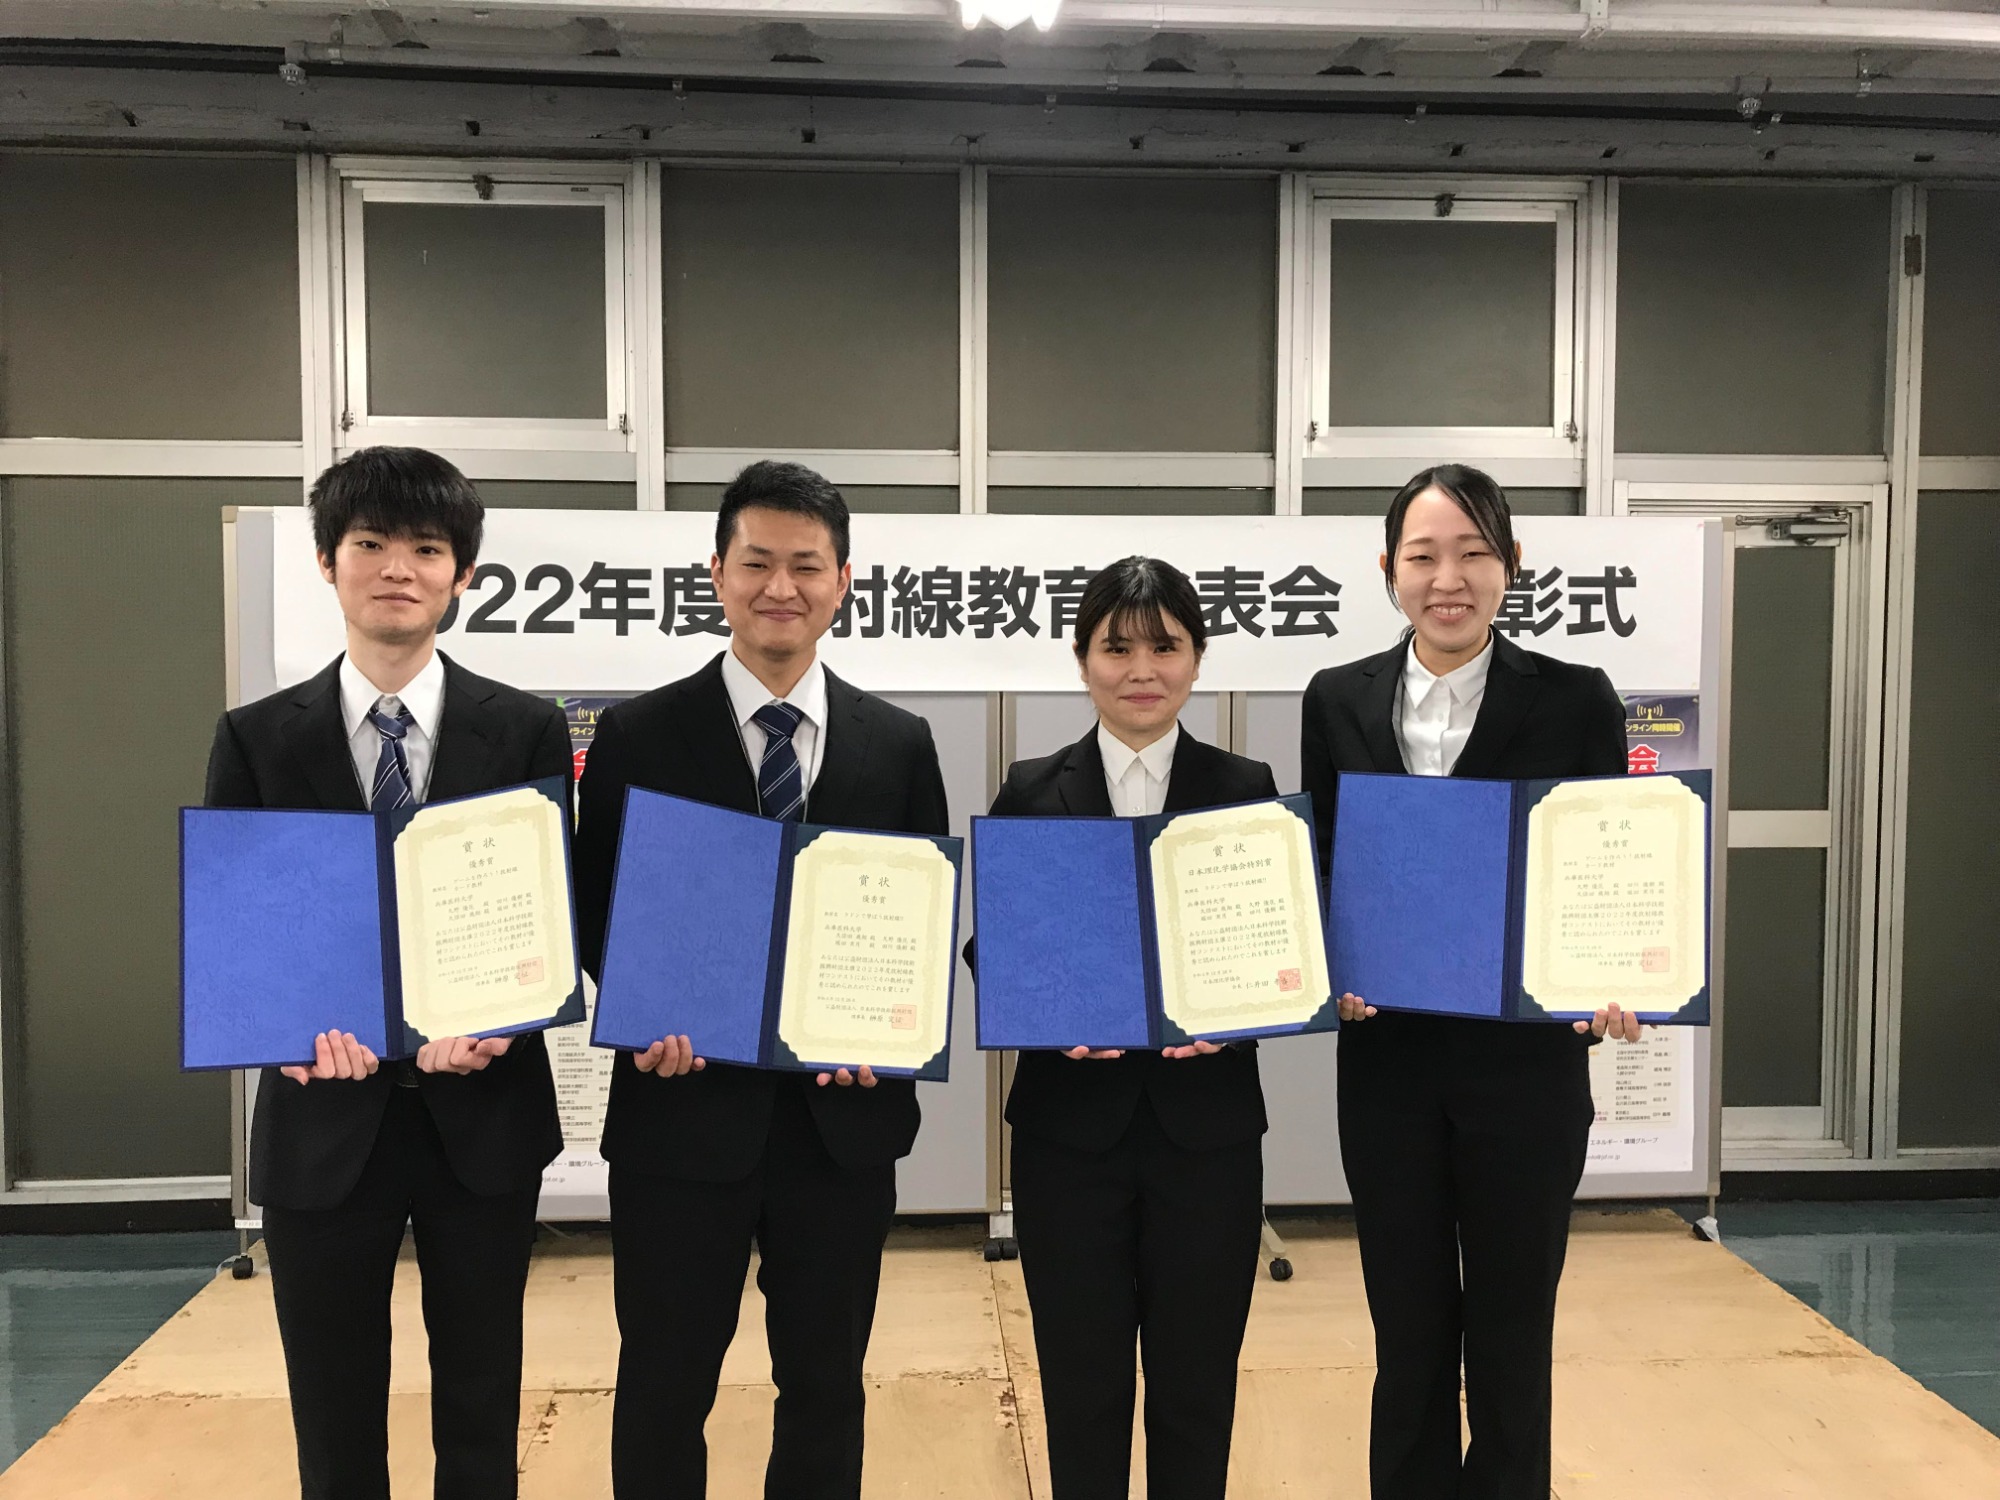 受賞者のみなさん（左から）田川優樹さん、久保田飛翔さん、堀田実月さん、久野優花さん